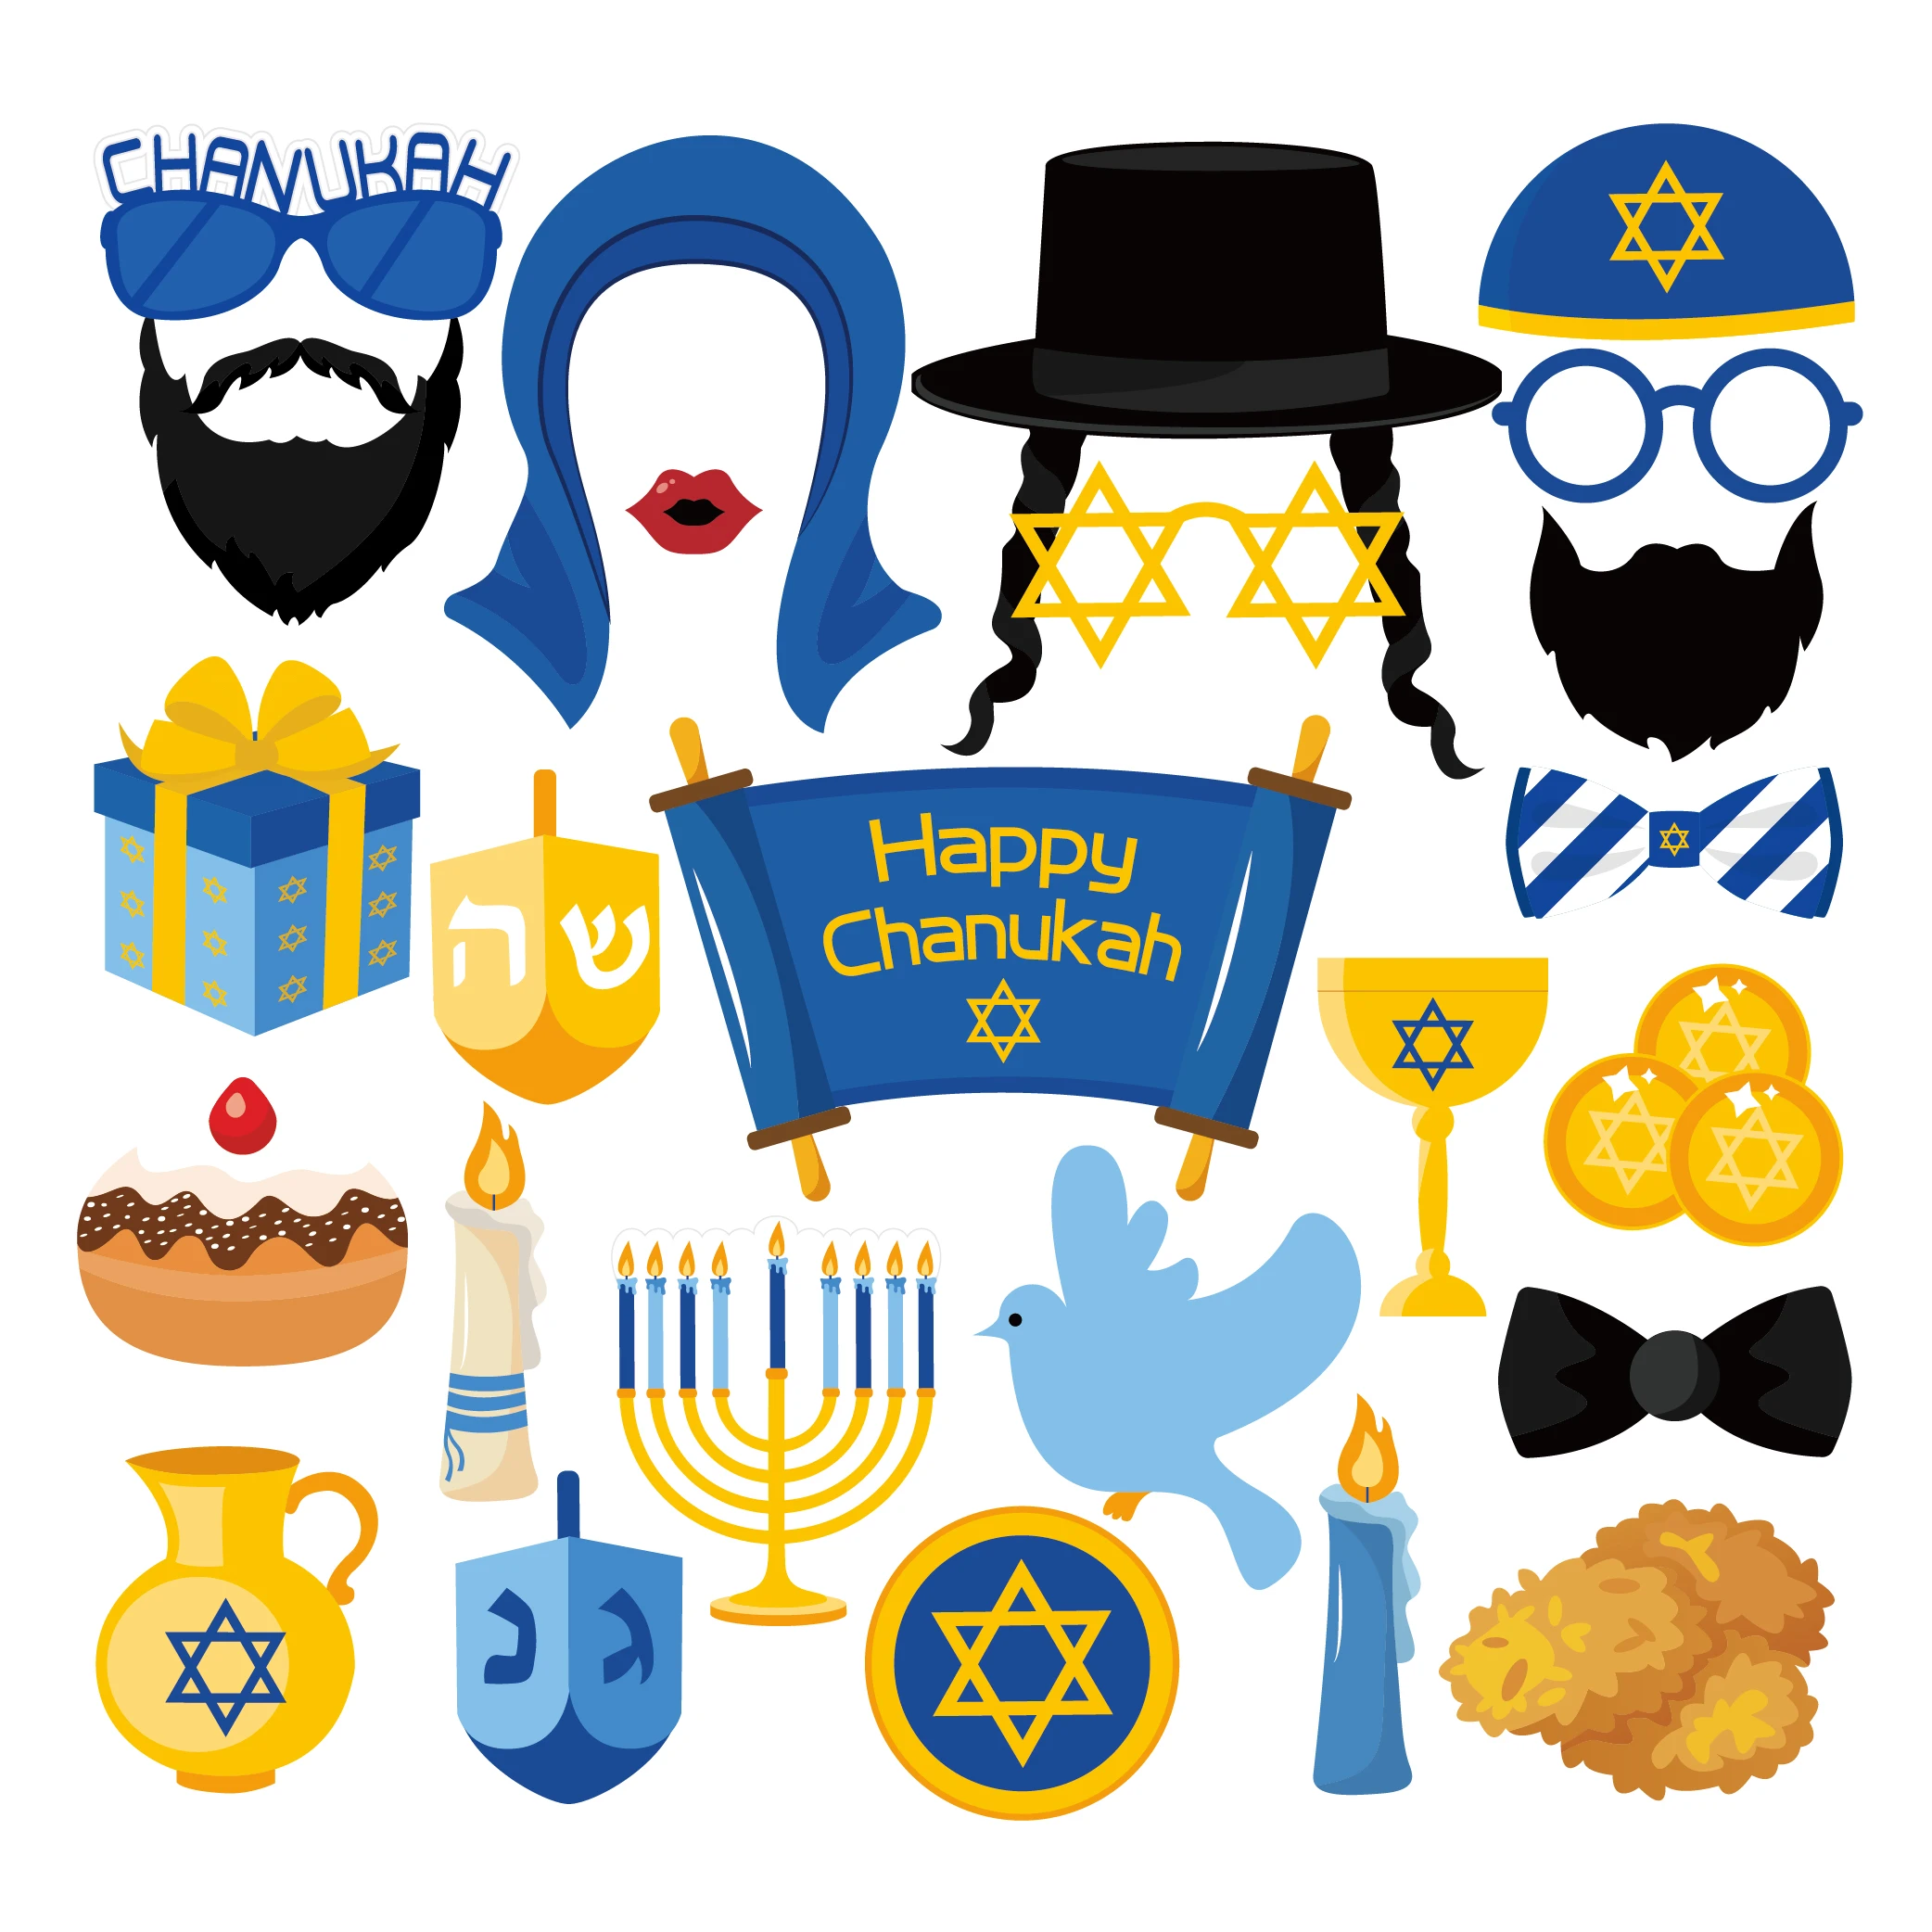 25pcs Happy Hanukkah Party Decorations Diy Photobooth Props Chanukah Theme Paper Cards Photobooth Props Party Favors Supplies Photobooth Props Aliexpress